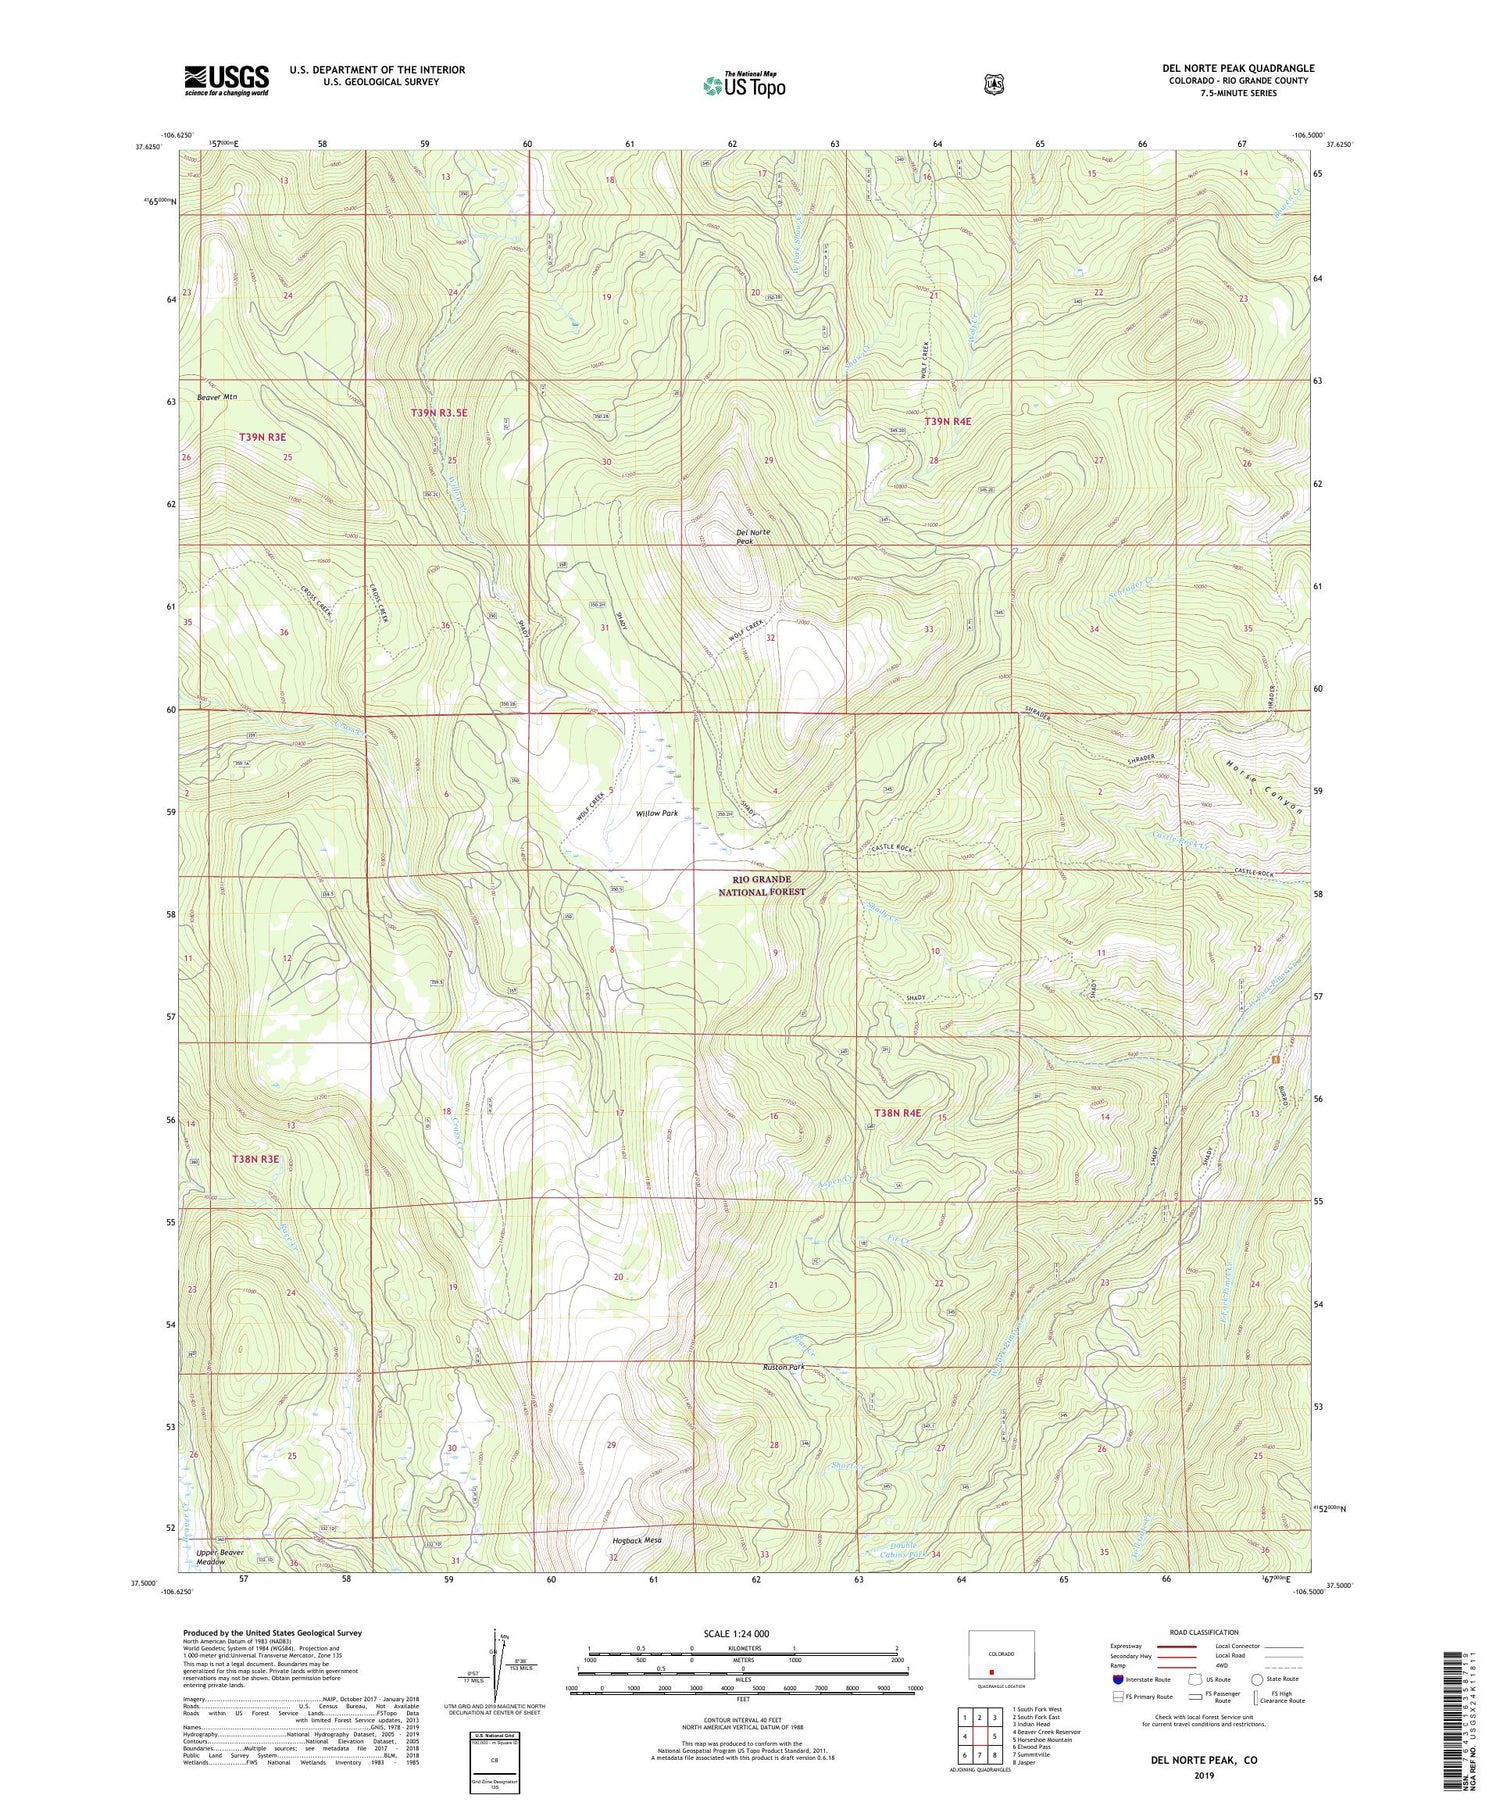 Del Norte Peak Colorado US Topo Map Image